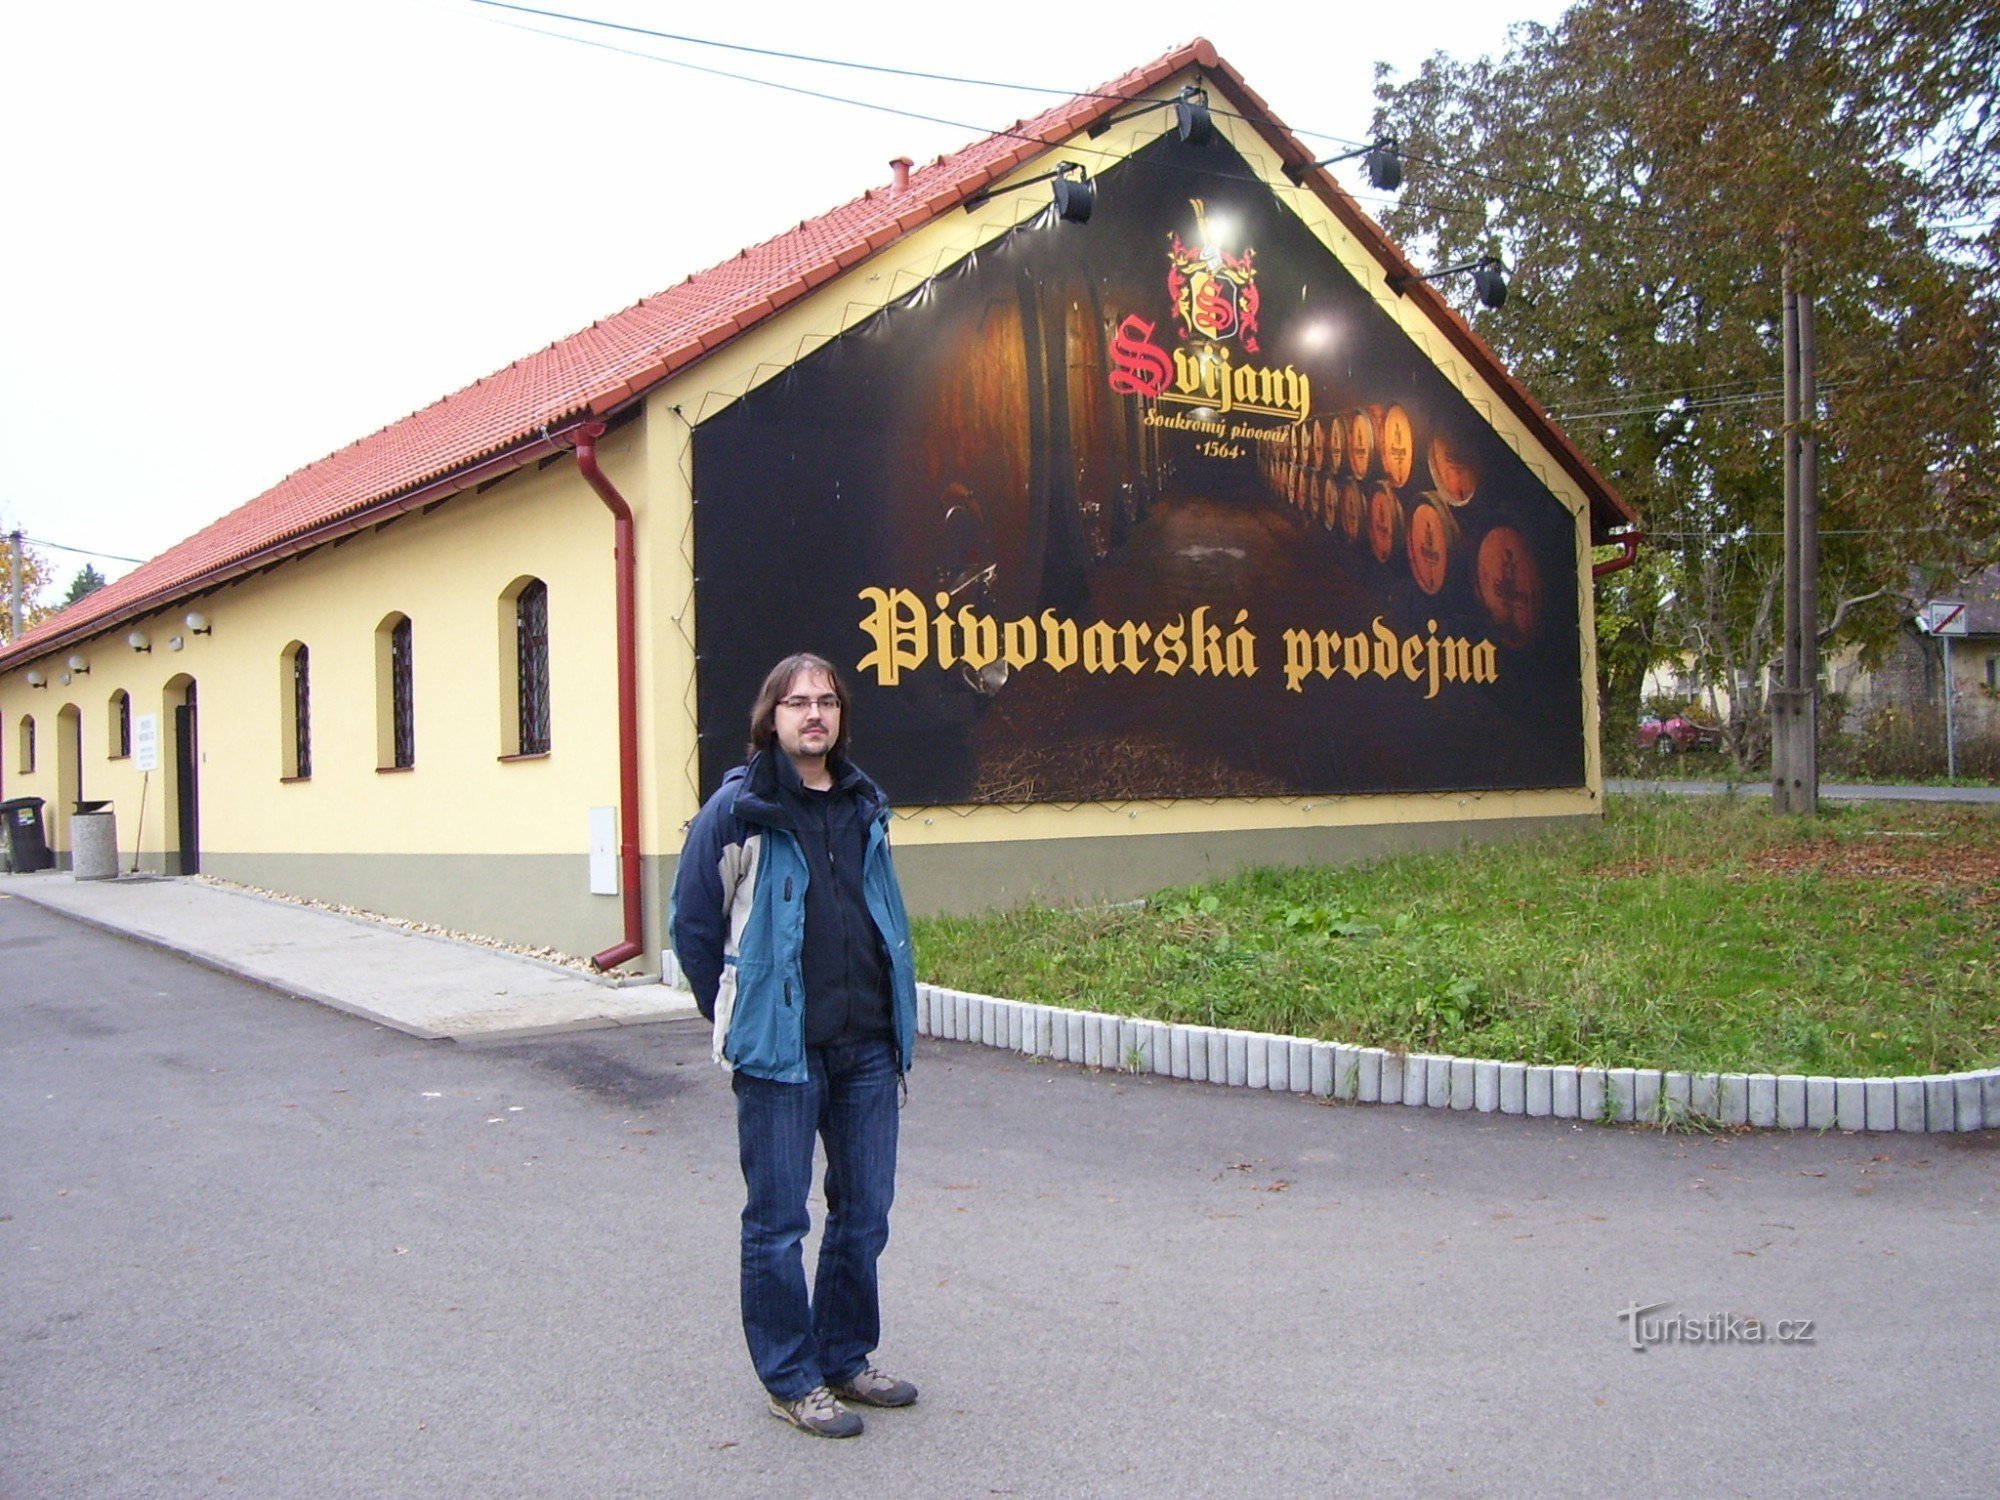 Brauerei Svijany